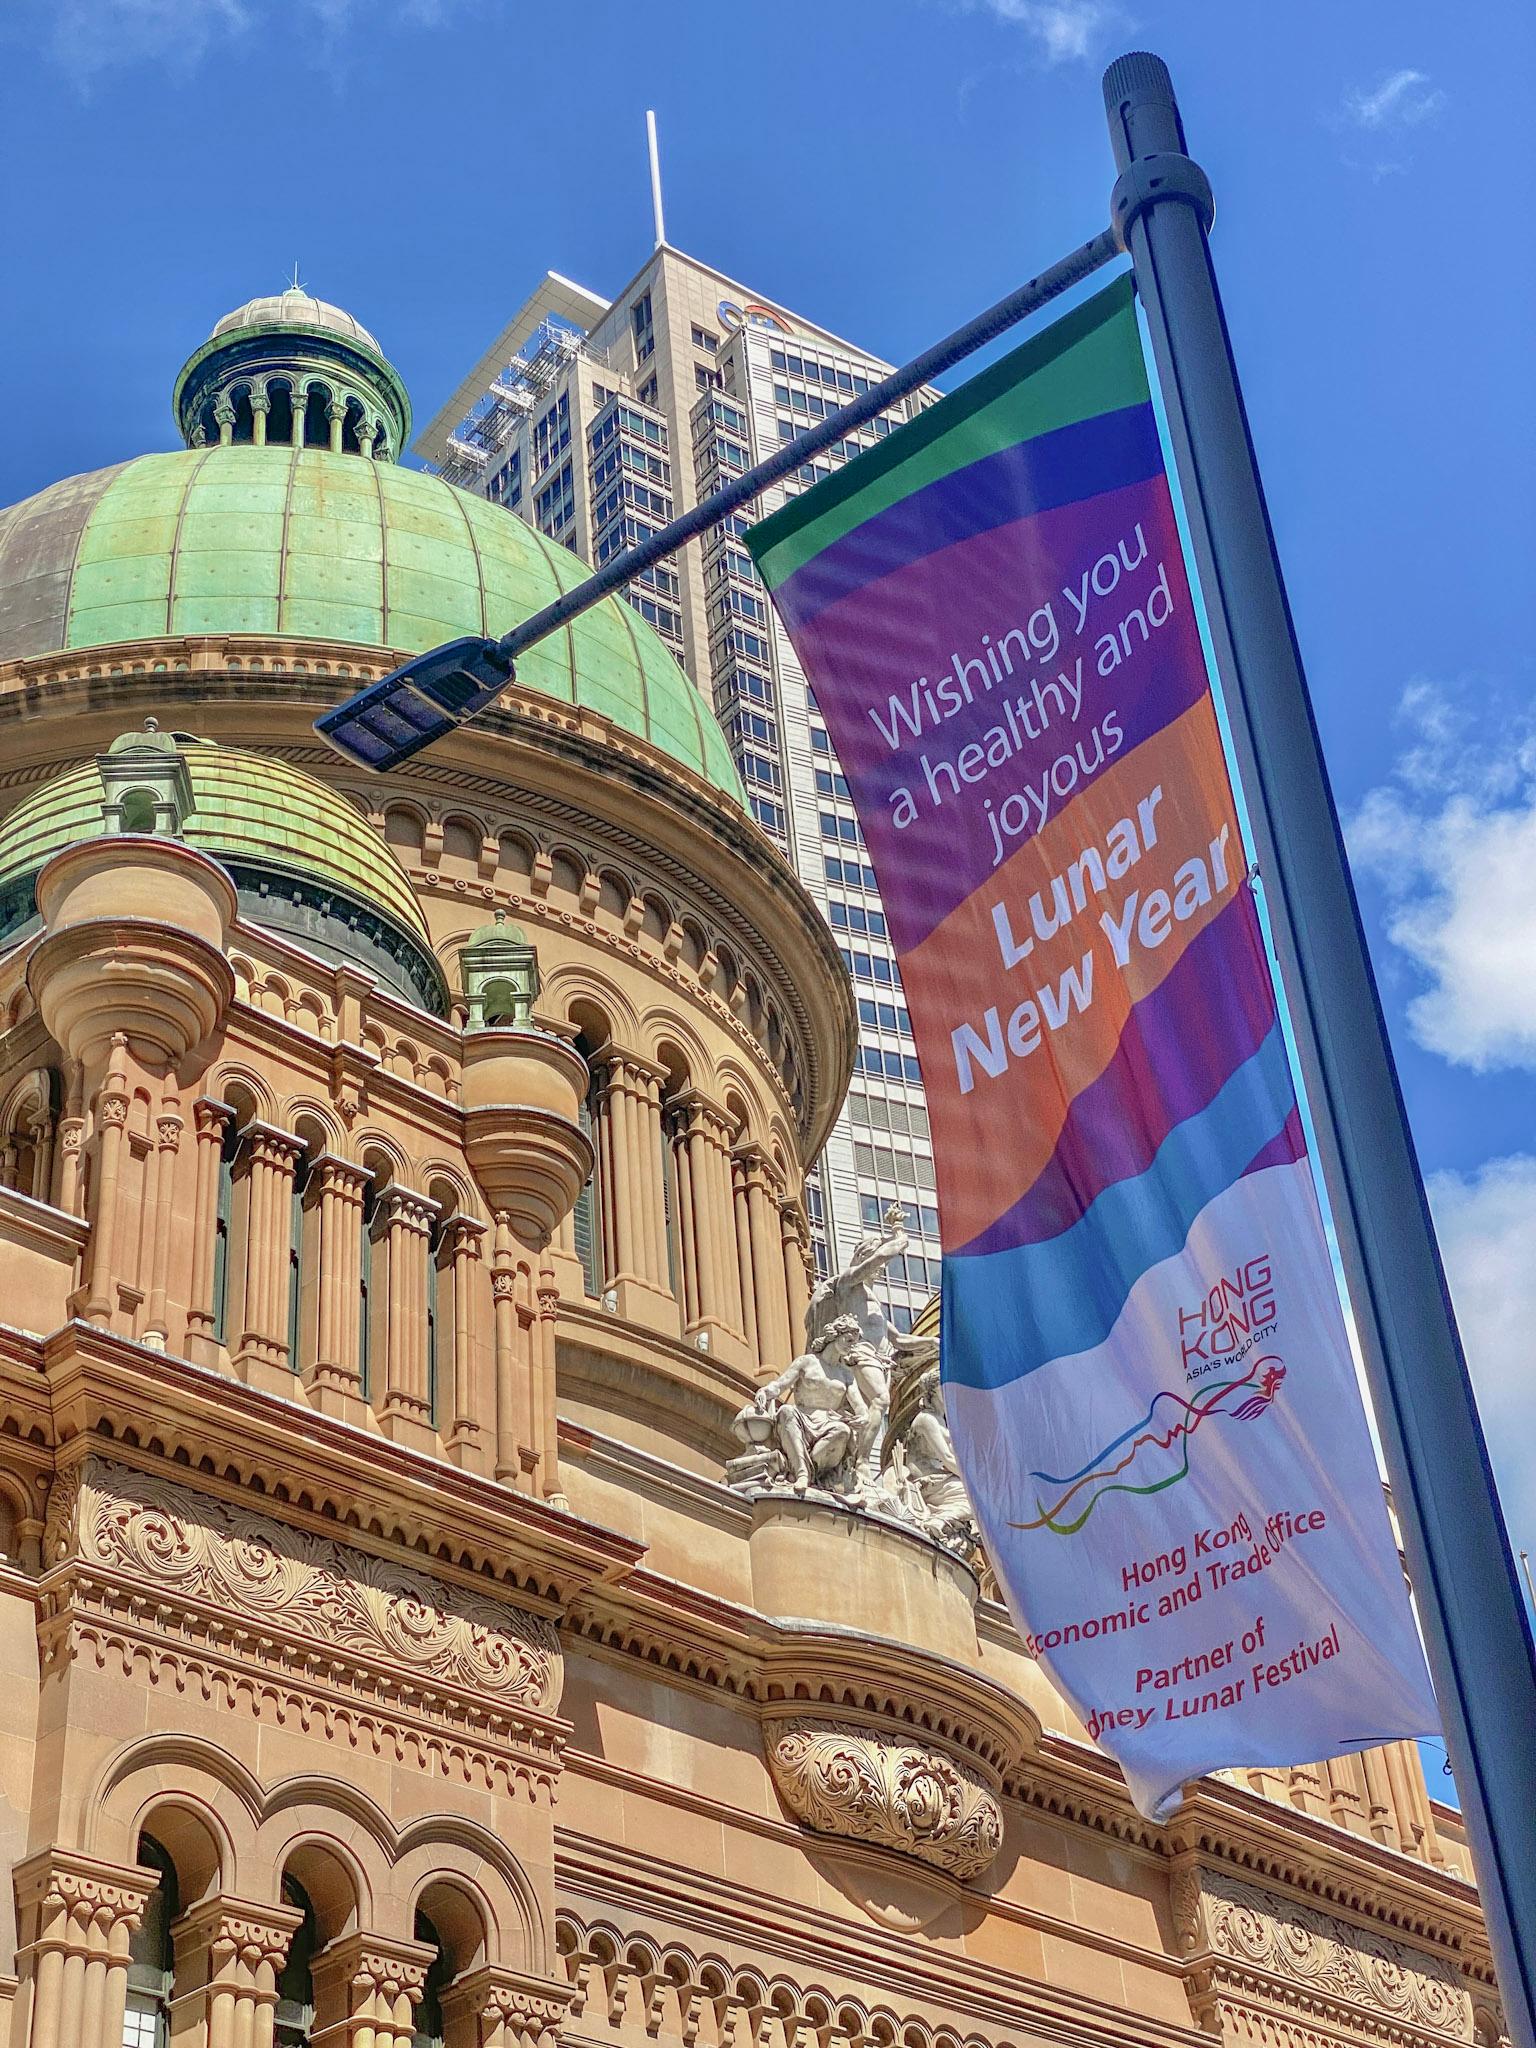 由悉尼市政府舉辦的悉尼農曆節在一月二十一日至二月五日舉行。節慶期間，香港駐悉尼經濟貿易辦事處在悉尼市中心主要地點展示以香港為主題並印有新年賀語的大型旗幟，與當地市民同慶新春。